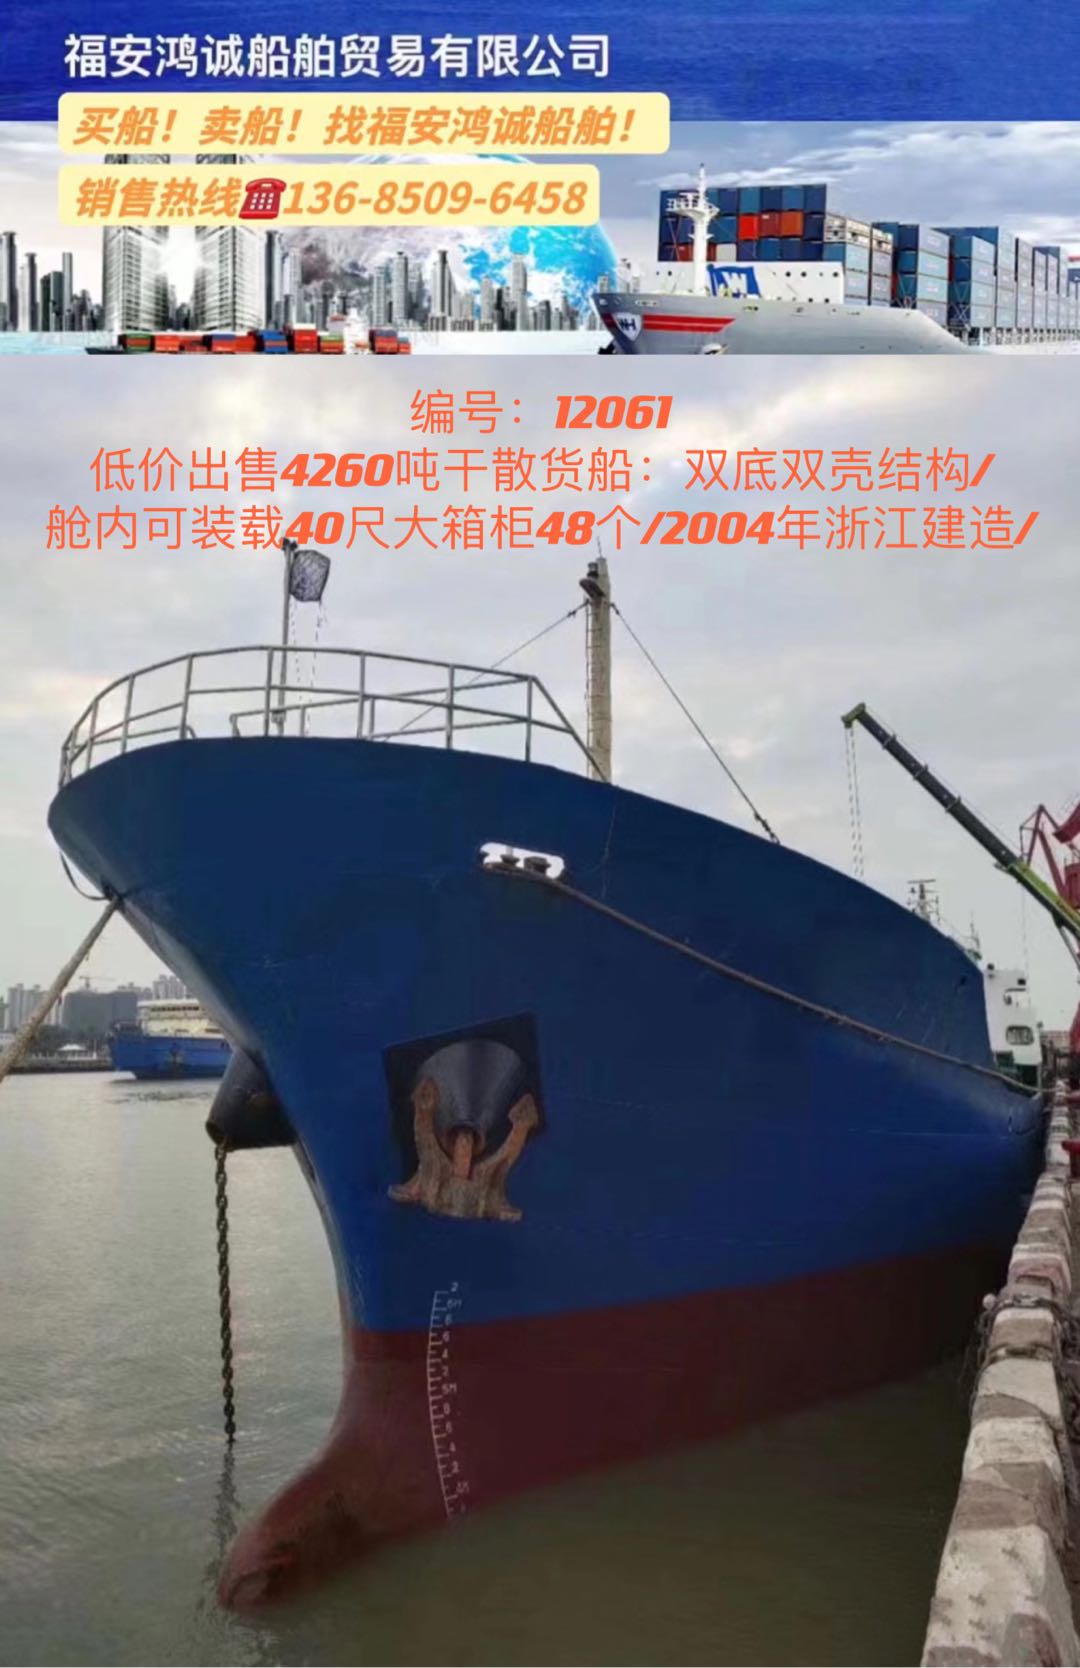 低价出卖04年4260吨干集货船 祸建 宁德市-2.jpg